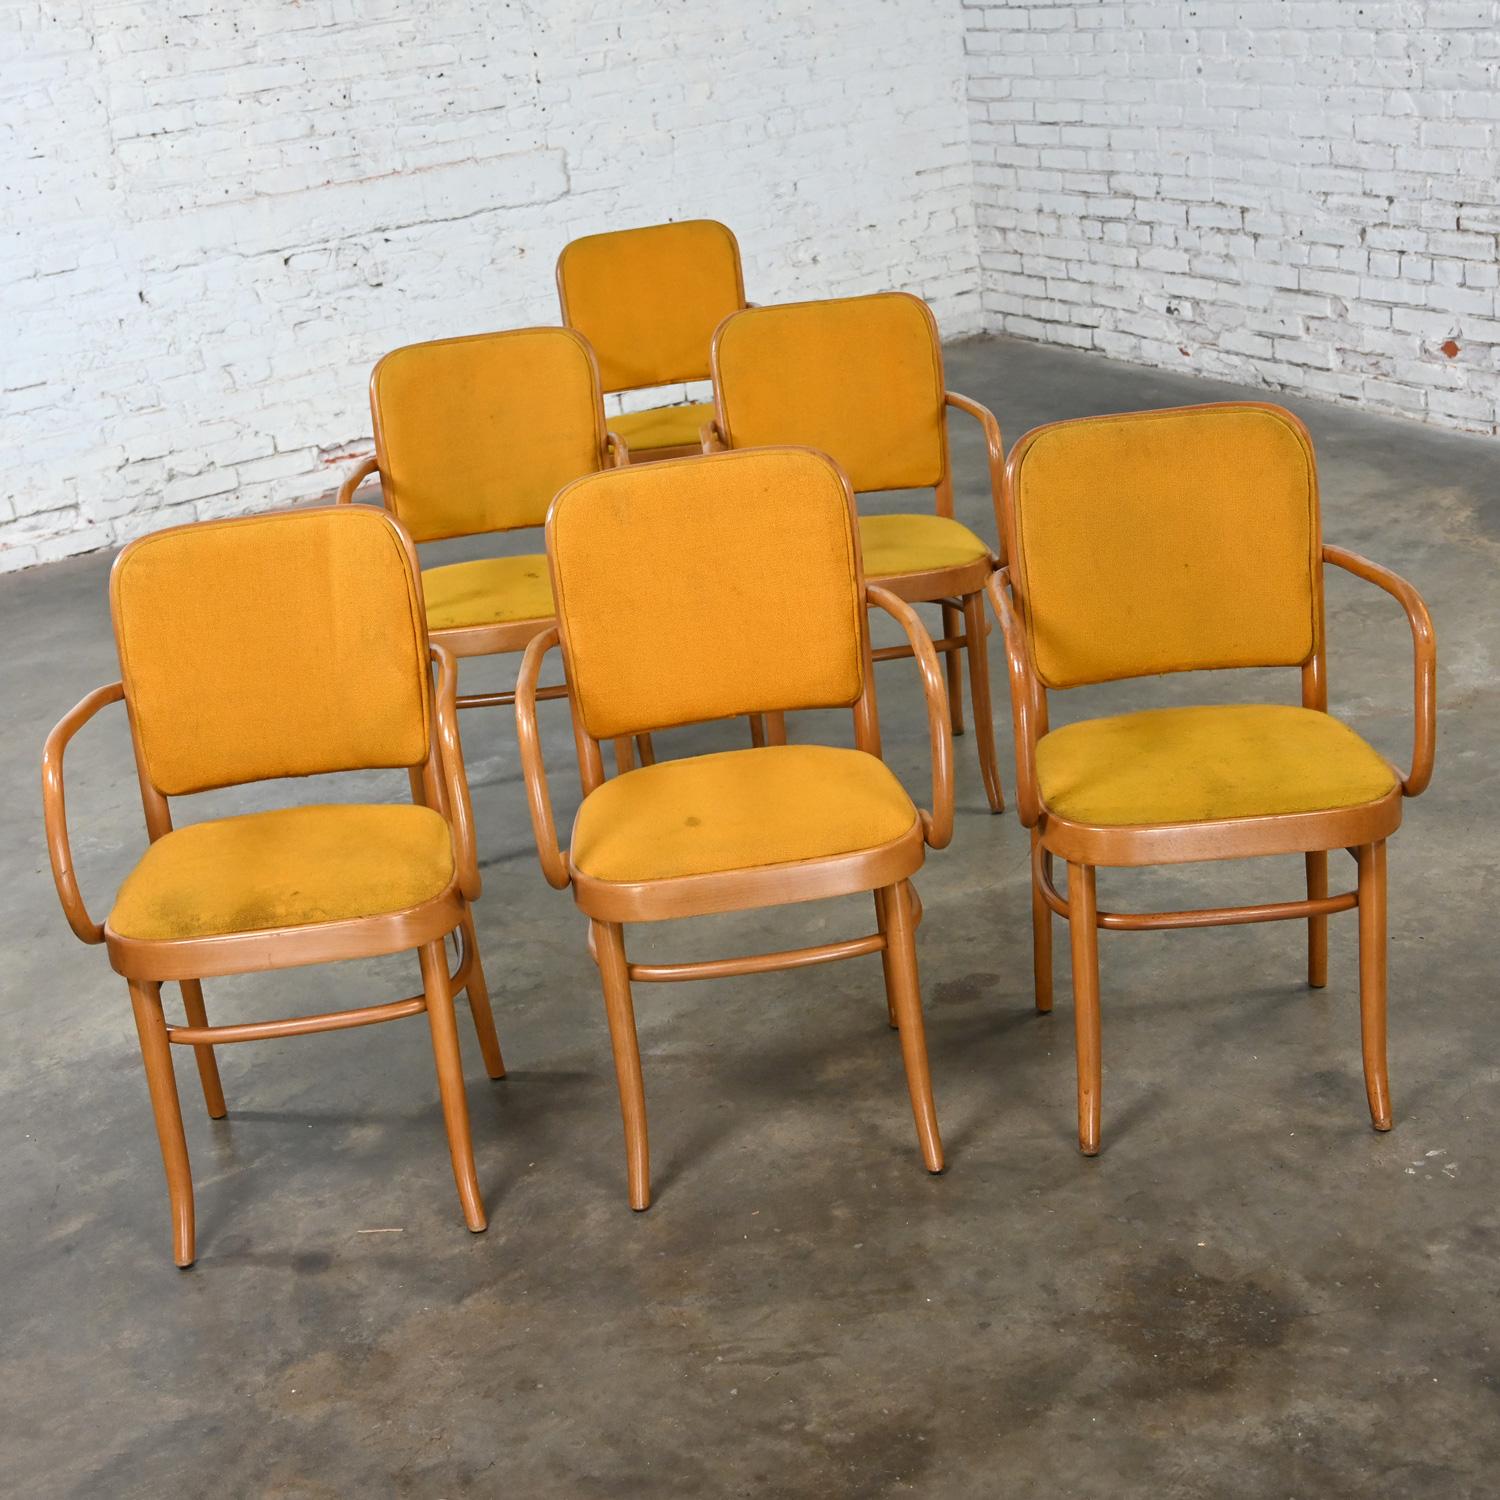 Merveilleuse chaise de salle à manger en bois courbé de style Thonet Josef Hoffman Prague 811 par Falcon Products Inc, lot de 6. Très bon état, en gardant à l'esprit qu'il s'agit d'une chaise vintage et non pas neuve et qu'elle présentera donc des